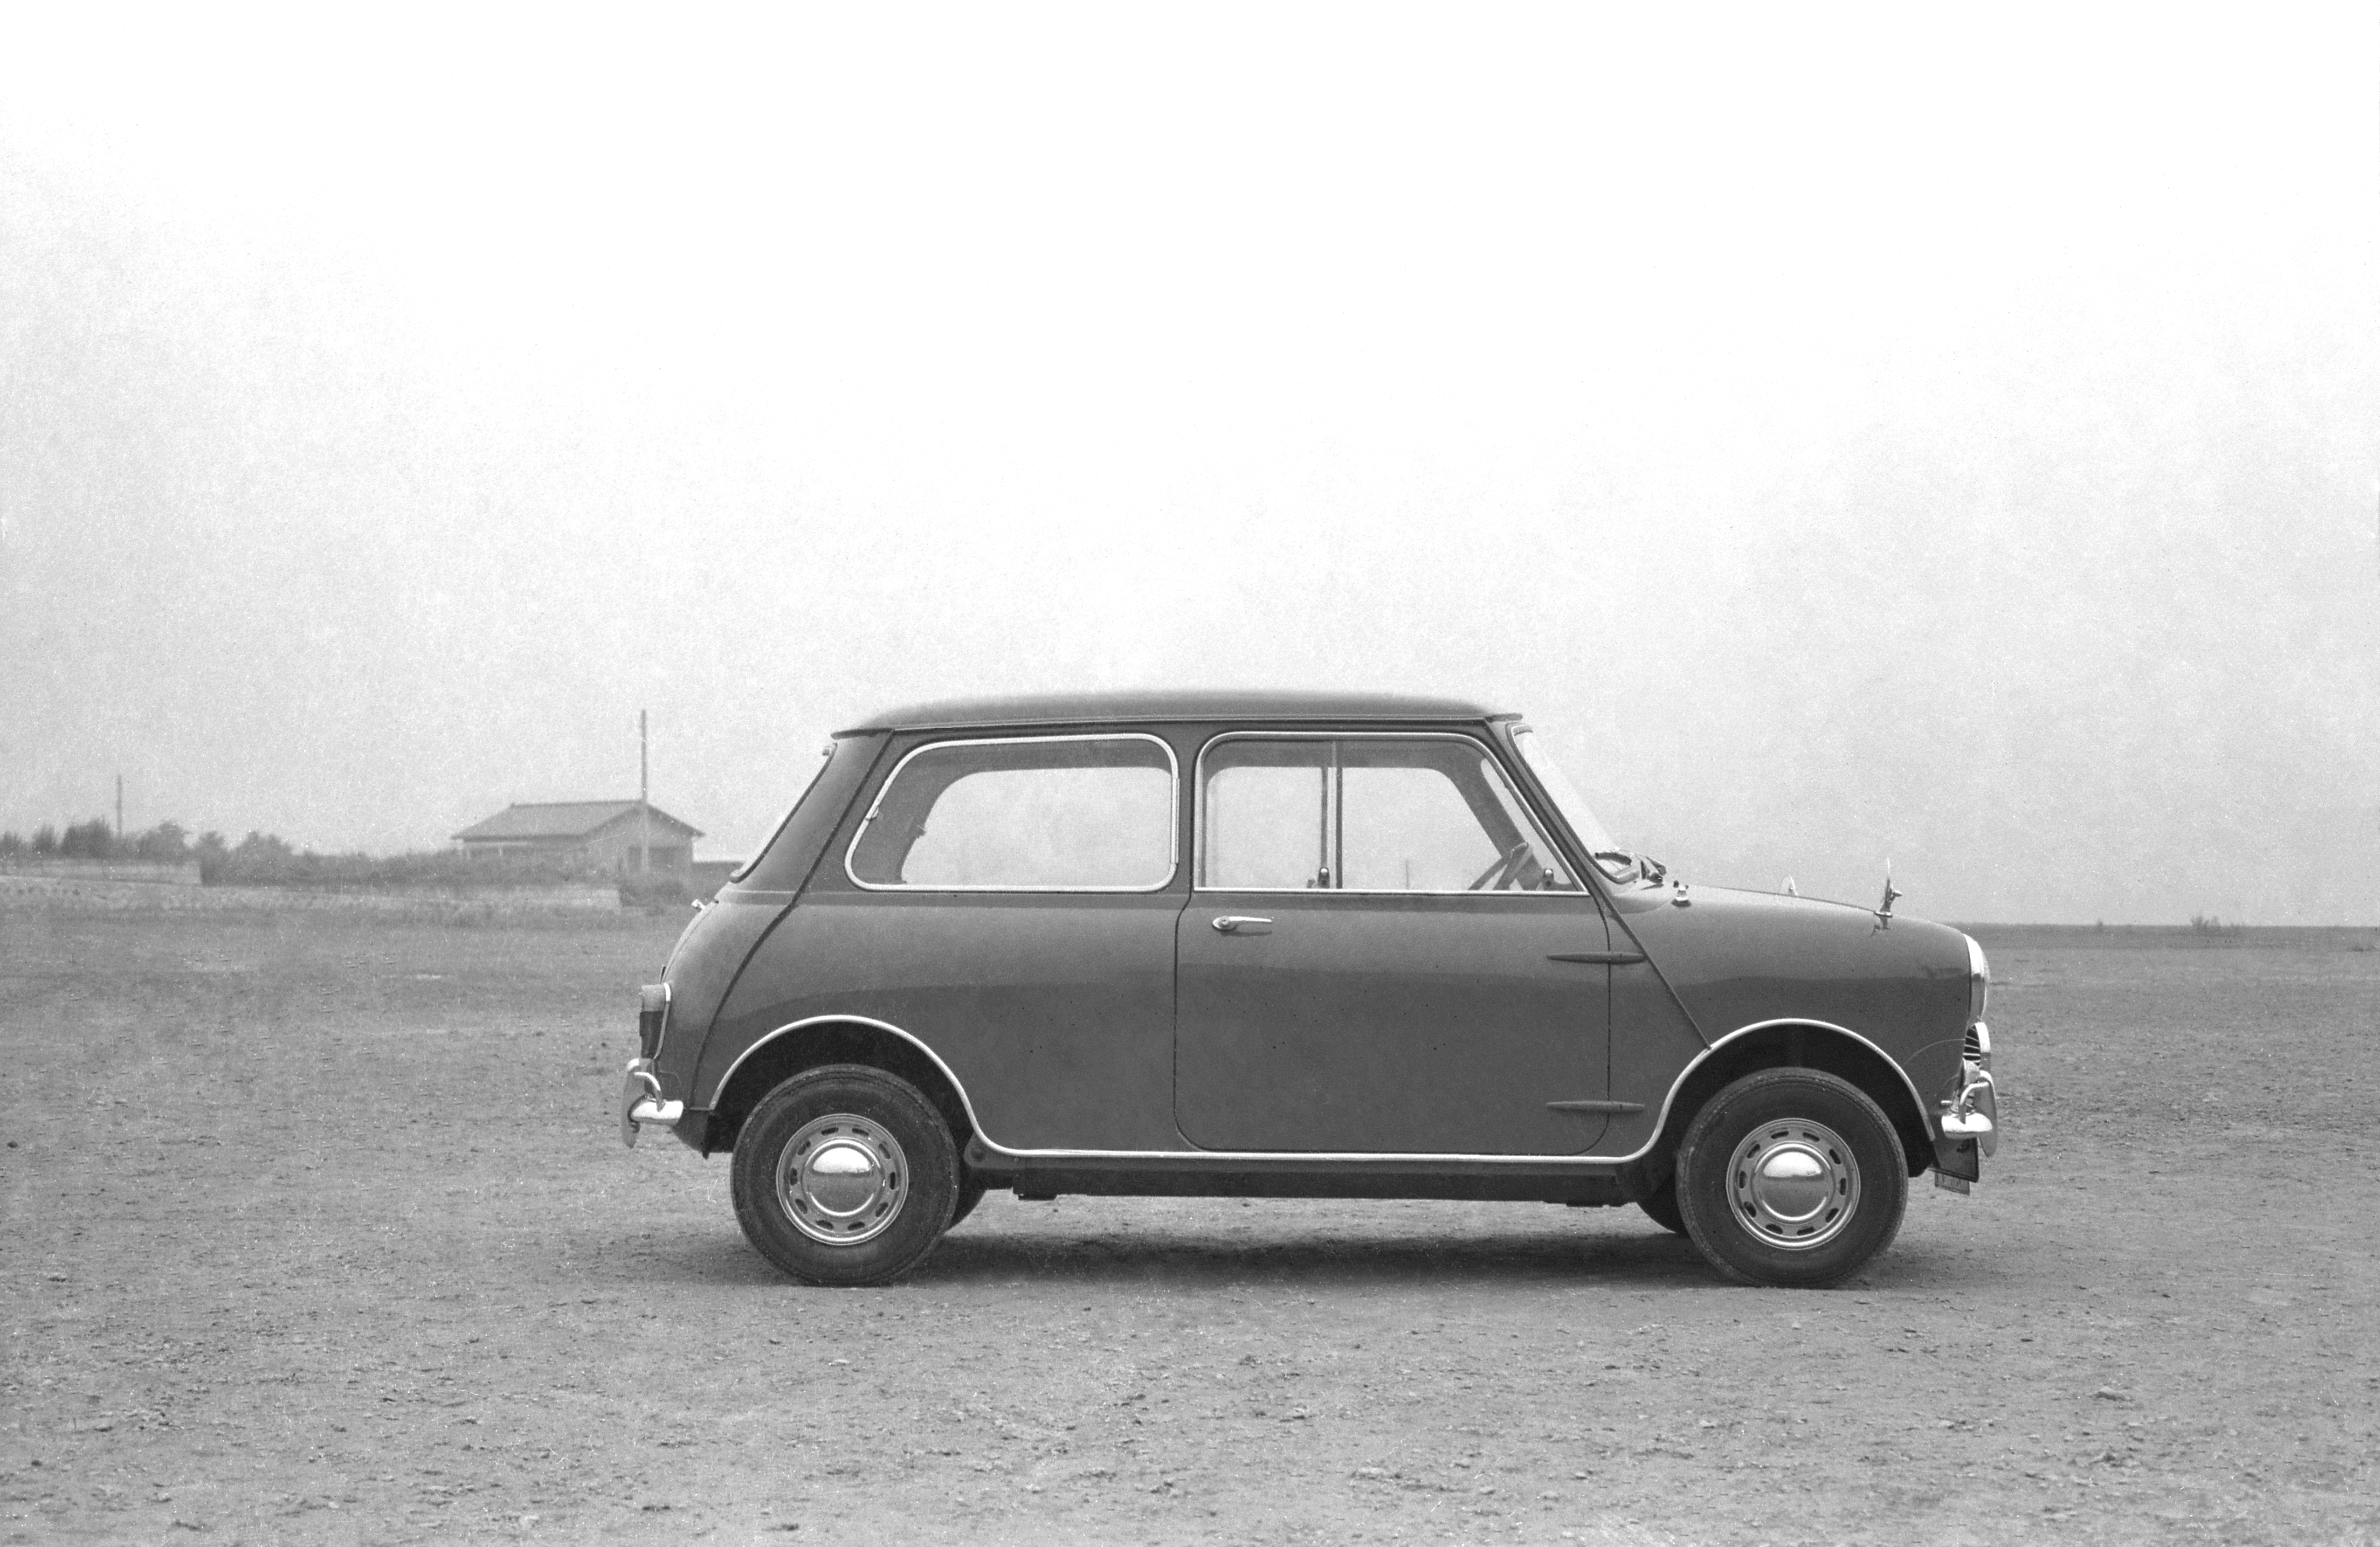 41年間も生産を続けたイギリスの小さな巨人 クラシック ミニ 東京オリンピック1964年特集vol 24 Driver Web 自動車情報サイト 新車 中古車 Carview